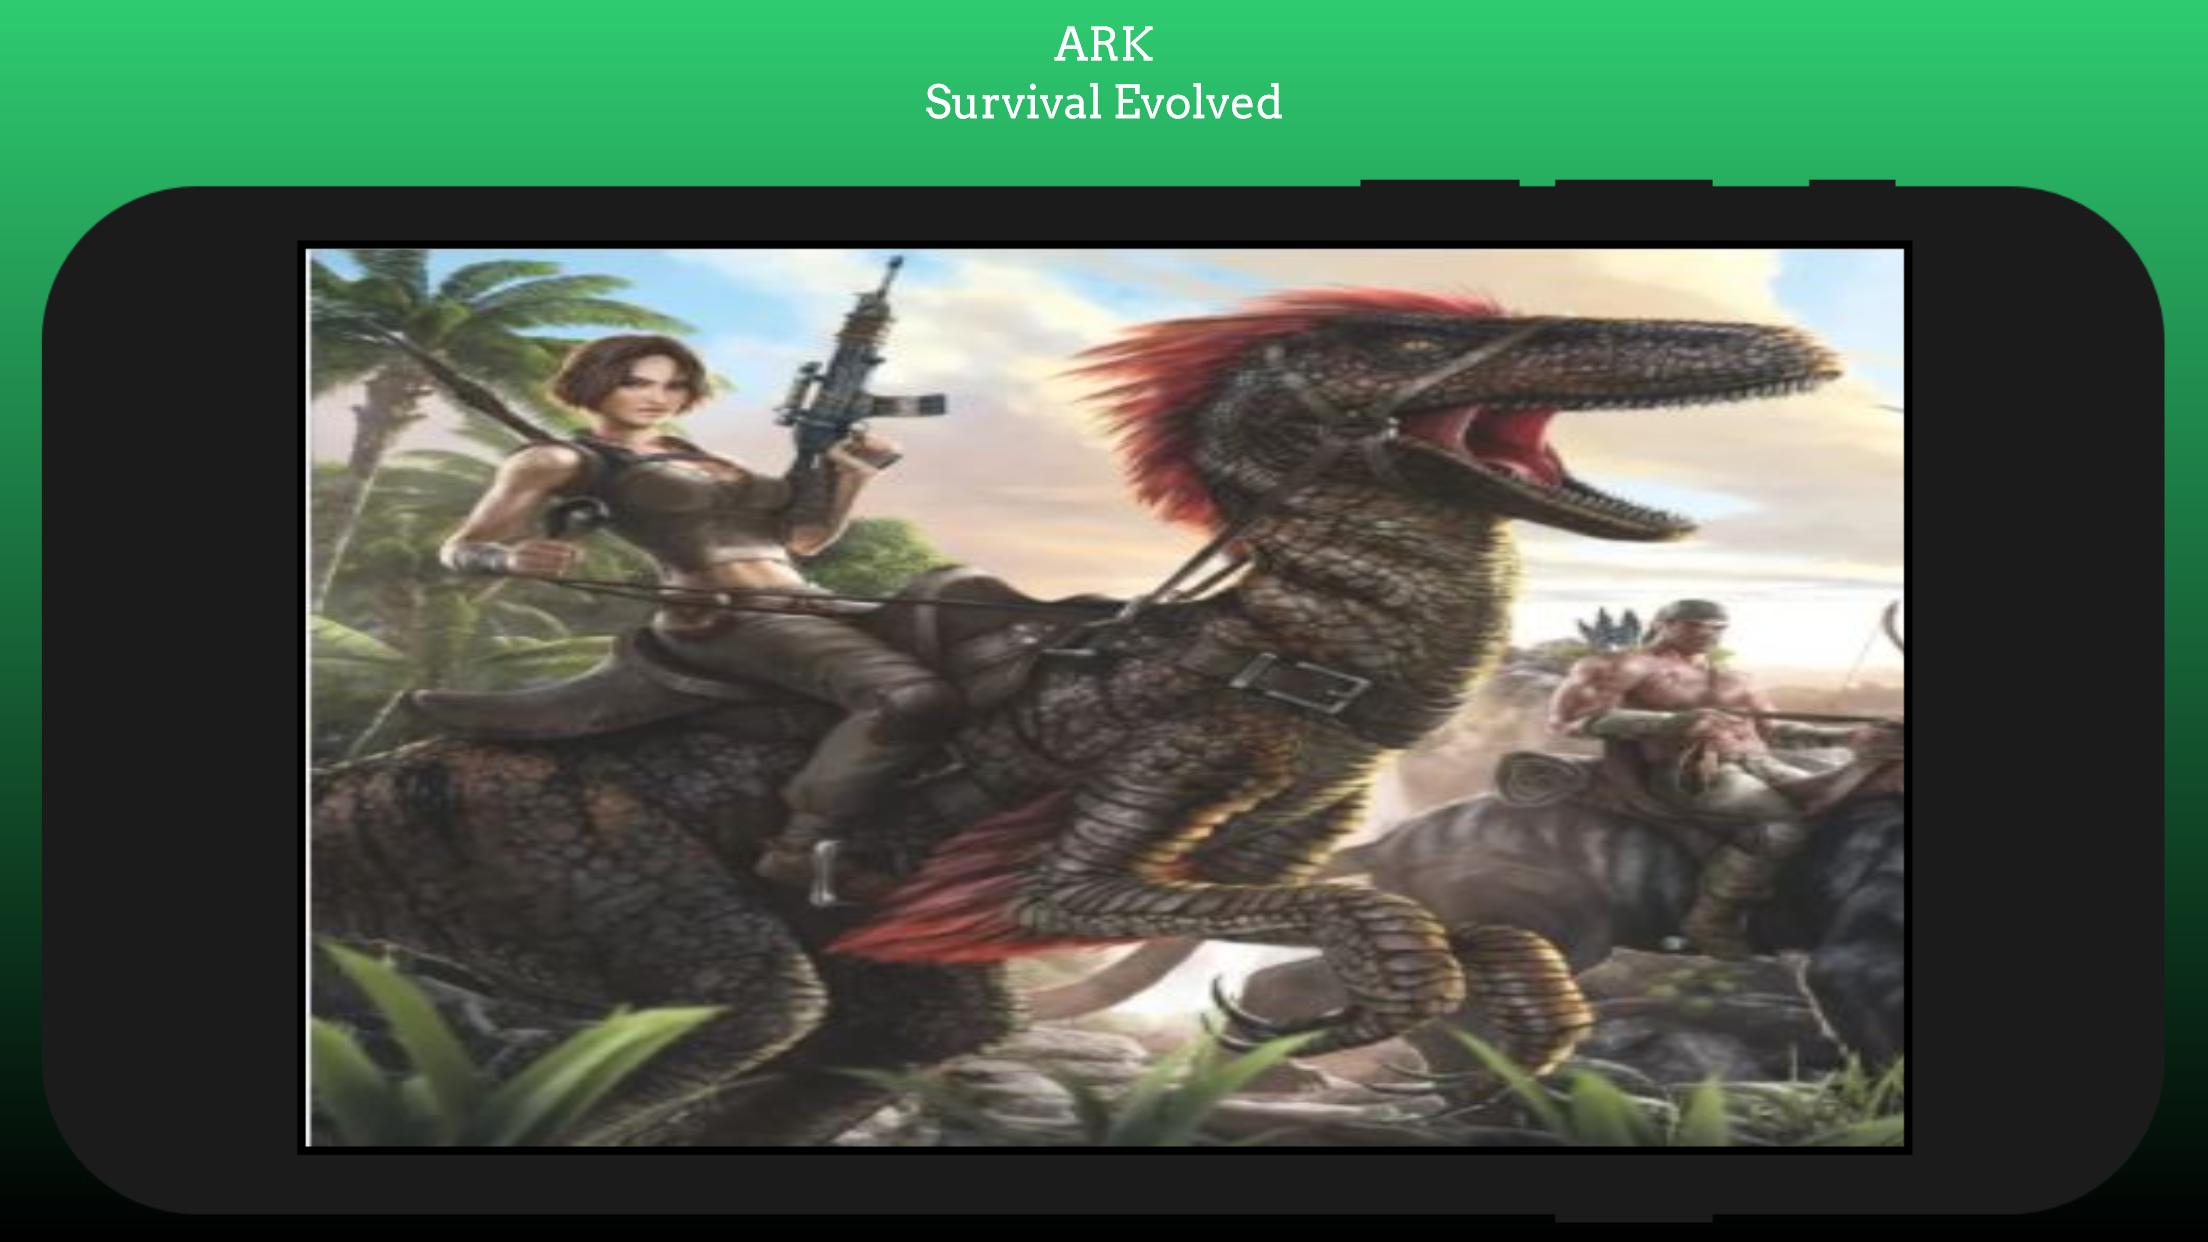 Ark: Survival Evolved. Картинки арка сурвавер и волд 2д. АРК файл. Ark Survival Evolved на телефон. Телевизор арк файл